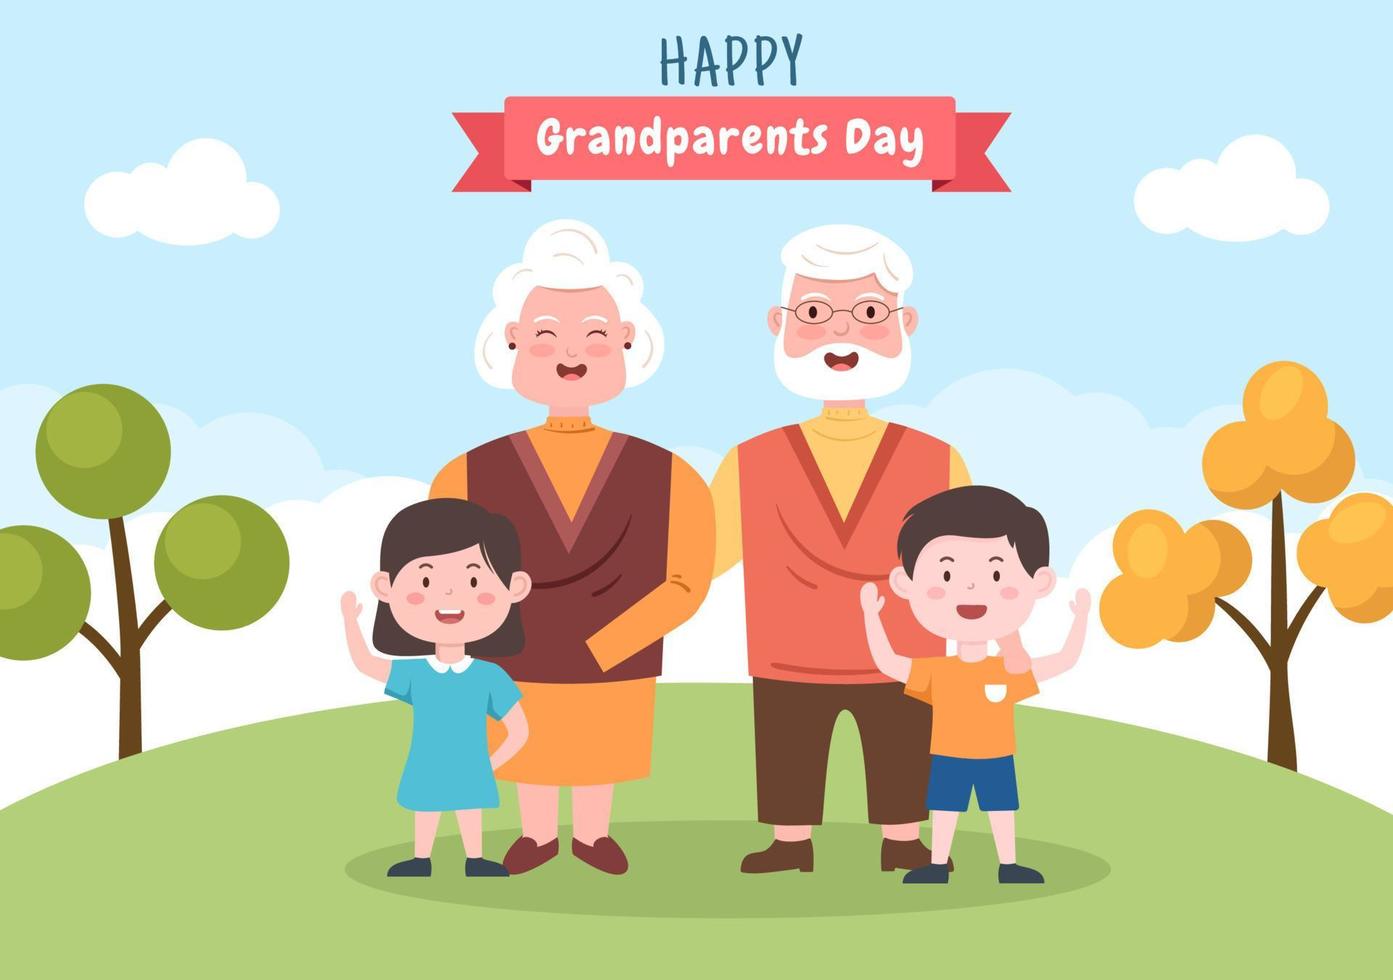 gelukkige grootouders dag schattige cartoon afbeelding met kleinkind, ouder echtpaar, bloemdecoratie, opa en oma in vlakke stijl voor poster of wenskaart vector